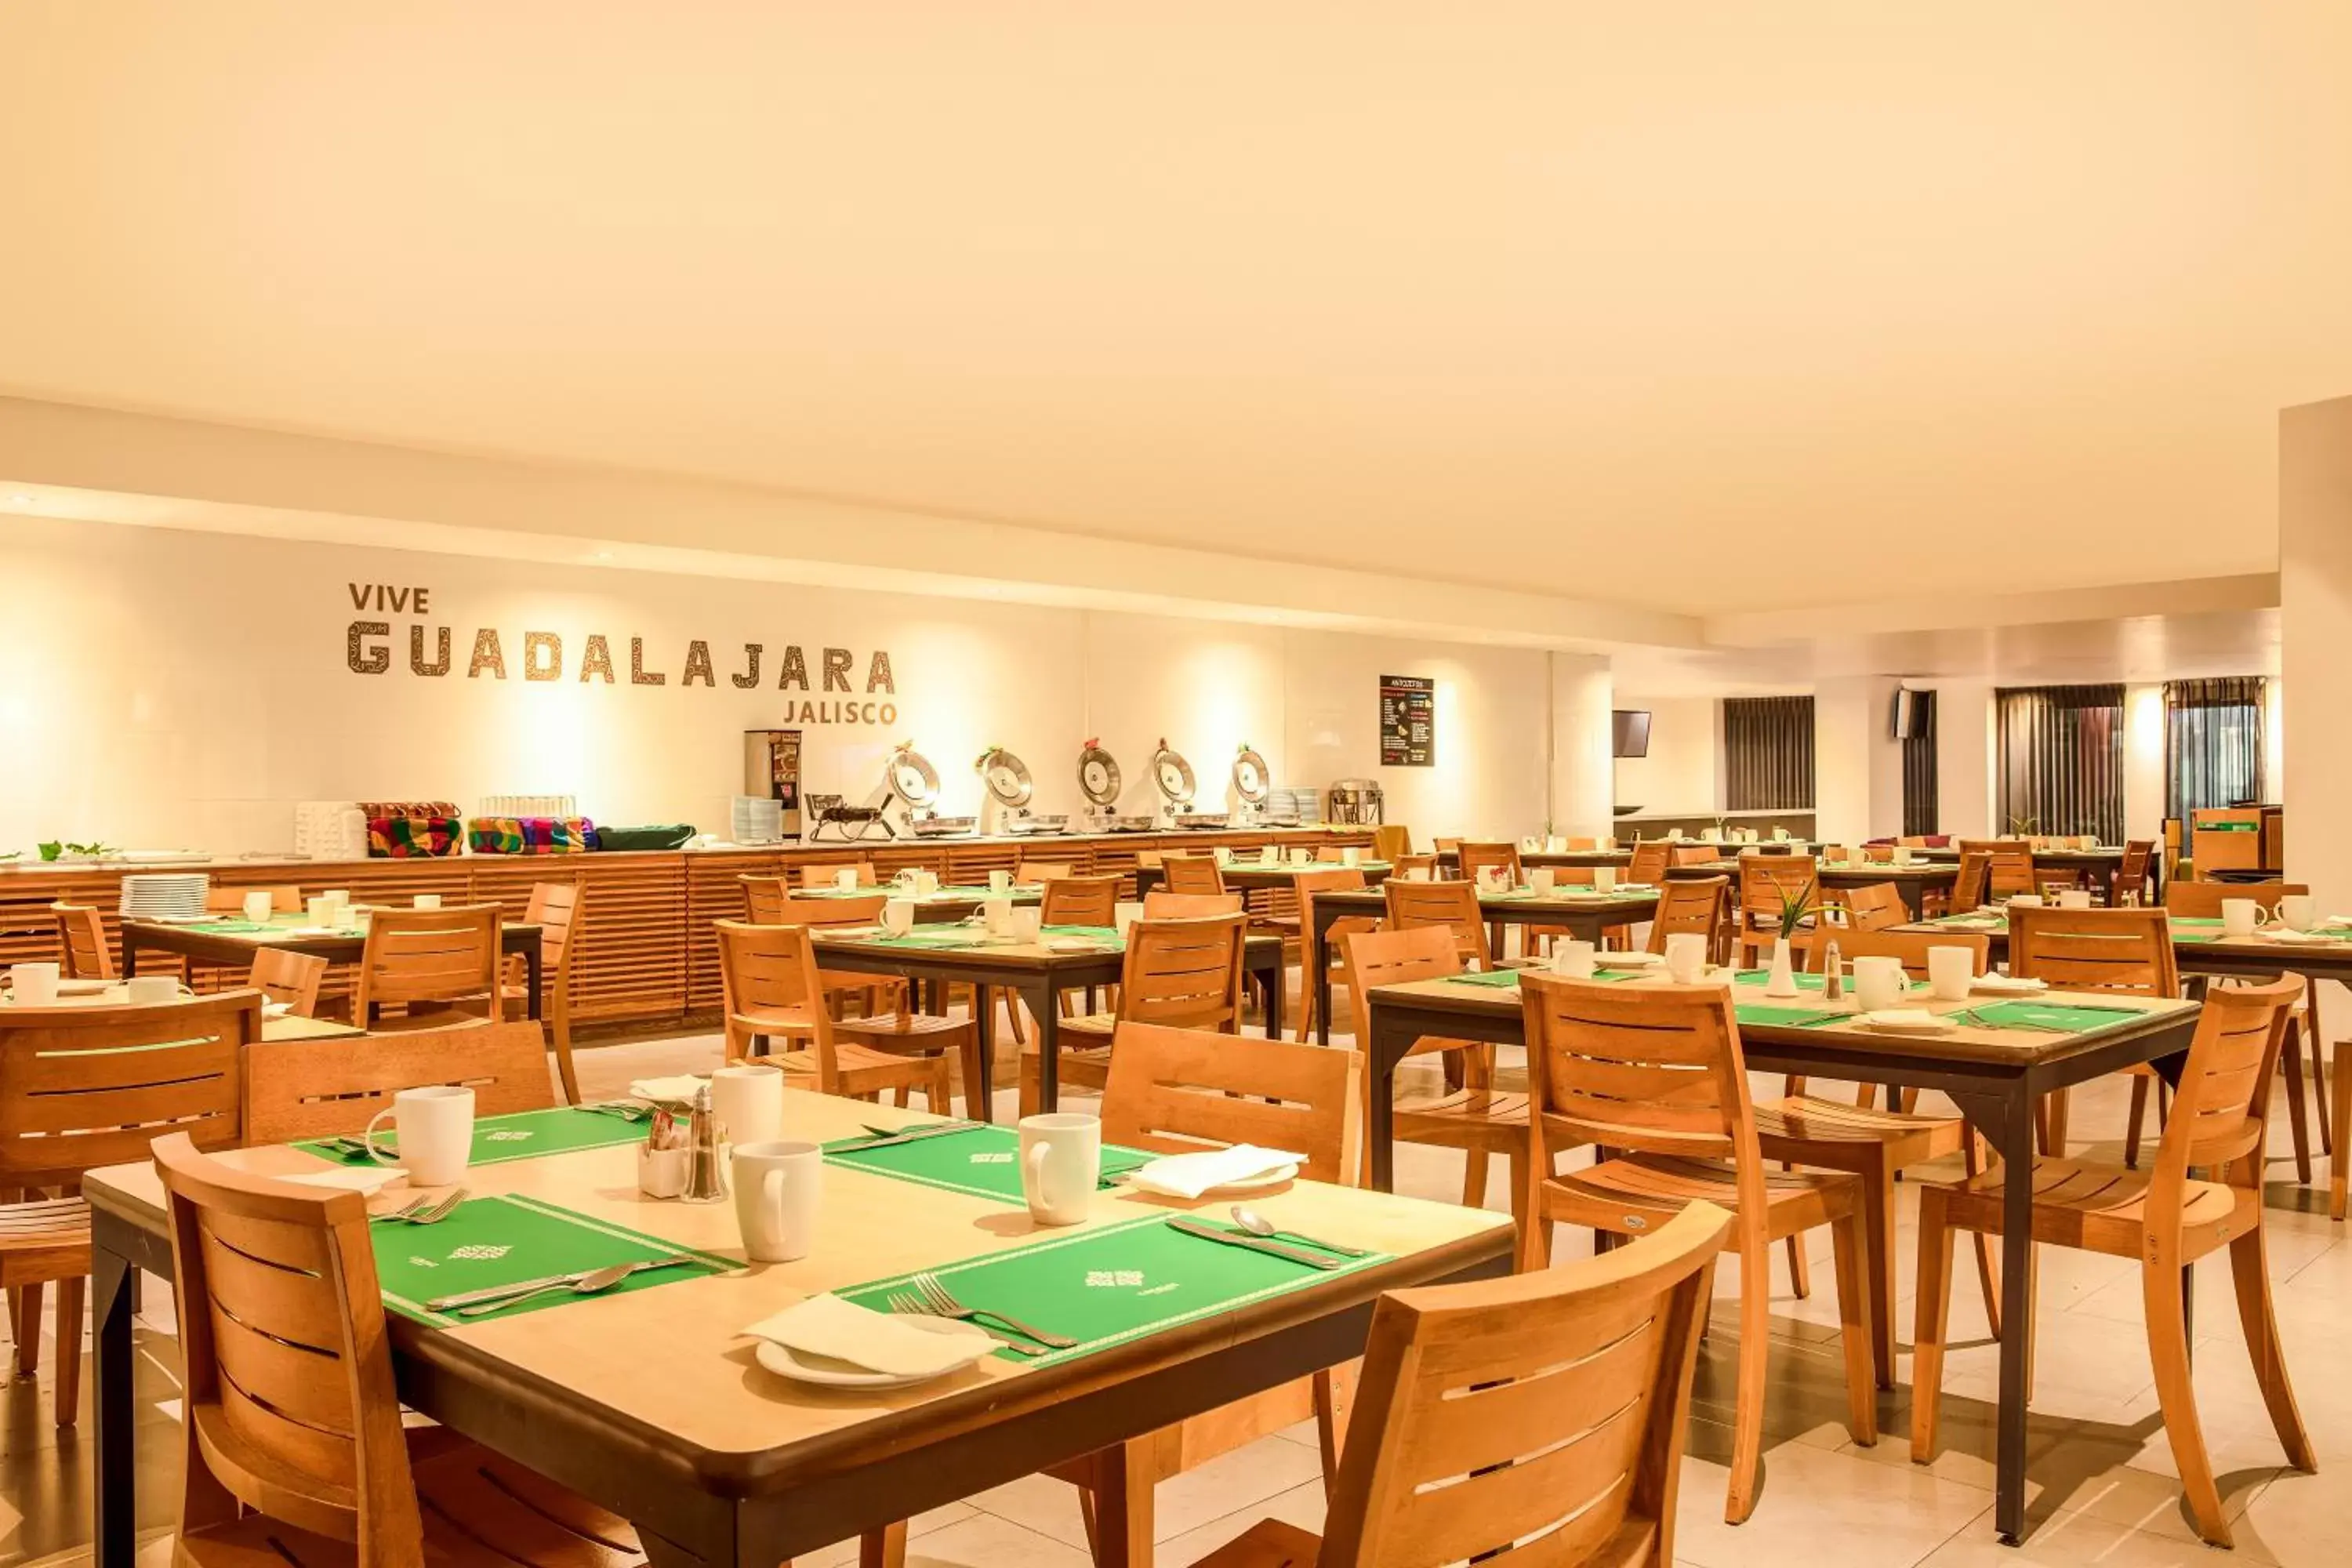 Restaurant/Places to Eat in Gamma Guadalajara Centro Historico